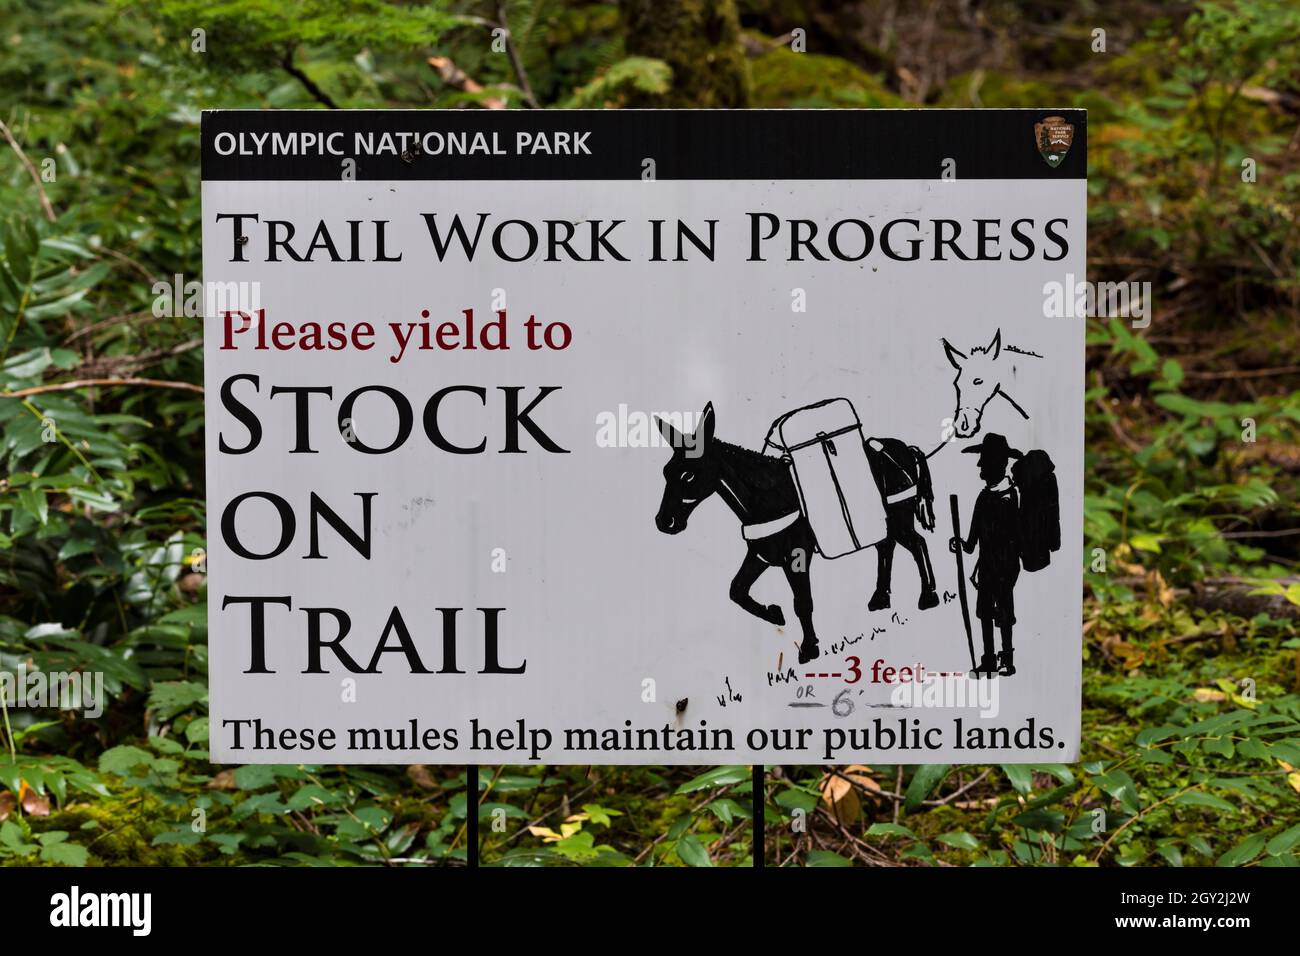 Schild für Maules, die im Olympic National Park, Washington State, USA, Wanderarbeiten an der Treppe machen Stockfoto